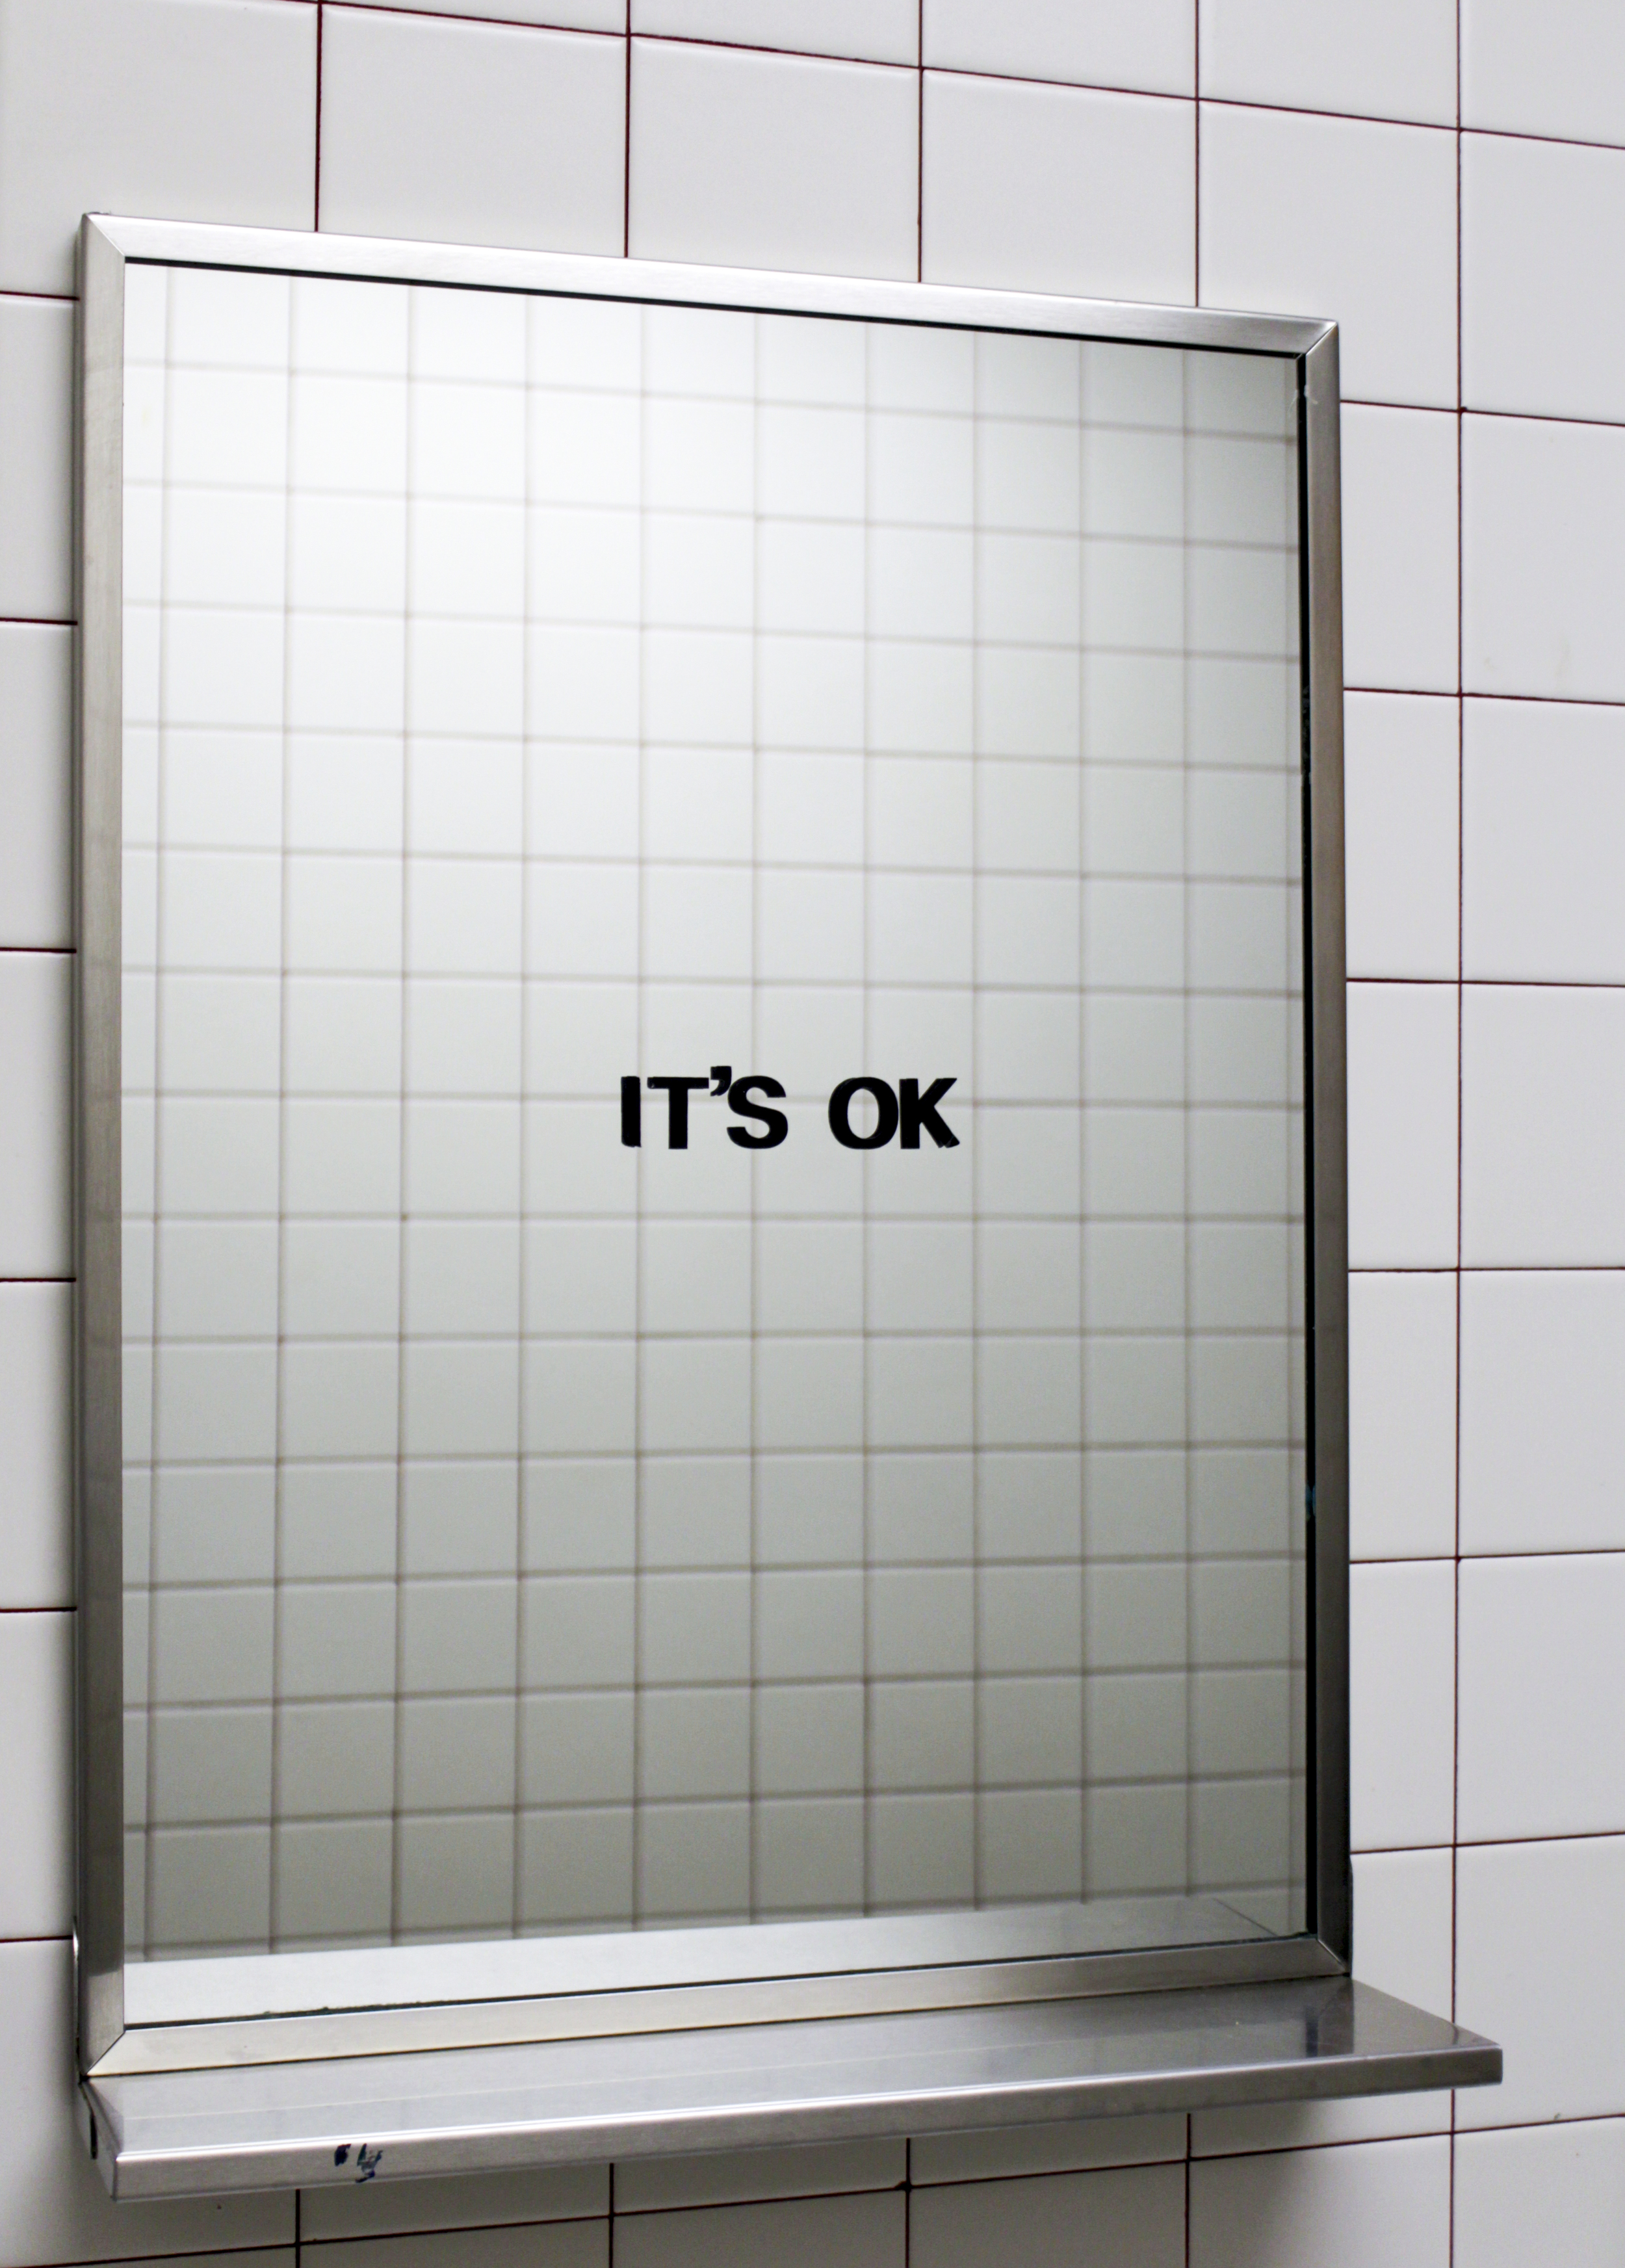 IT'S OK